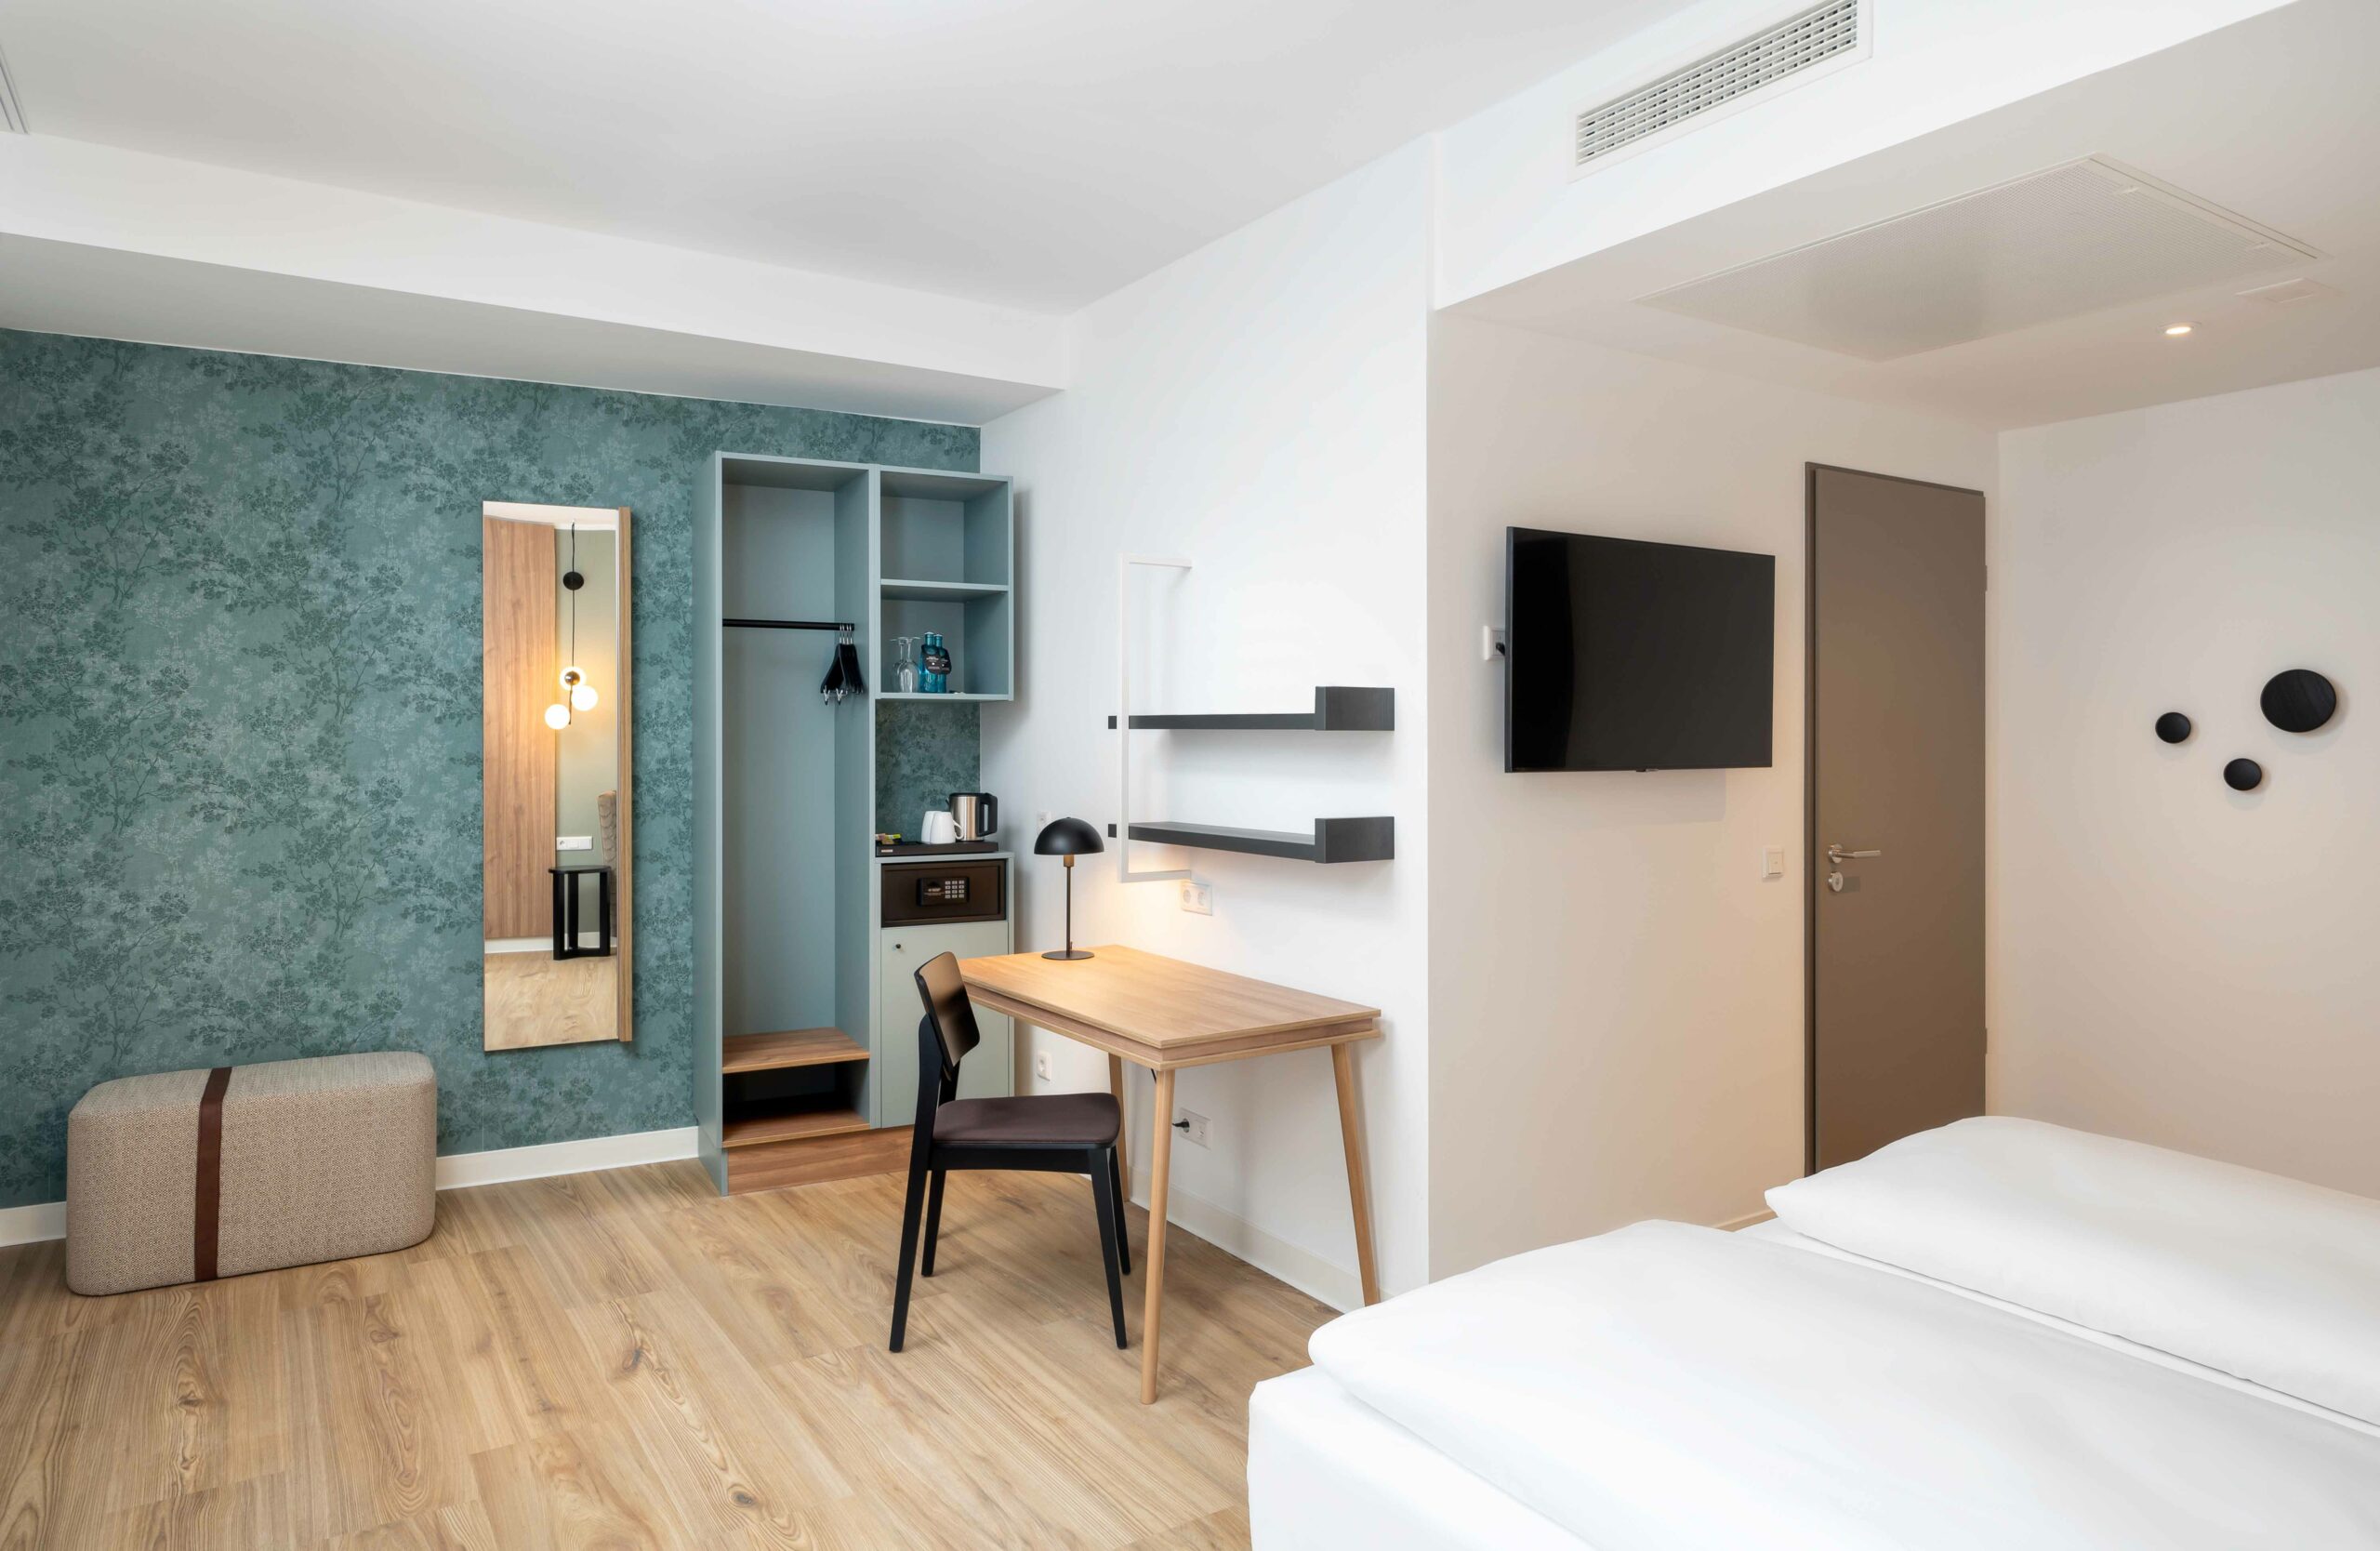 Ein Doppelzimmer der Kategorie Superior im elaya hotel regensburg city center